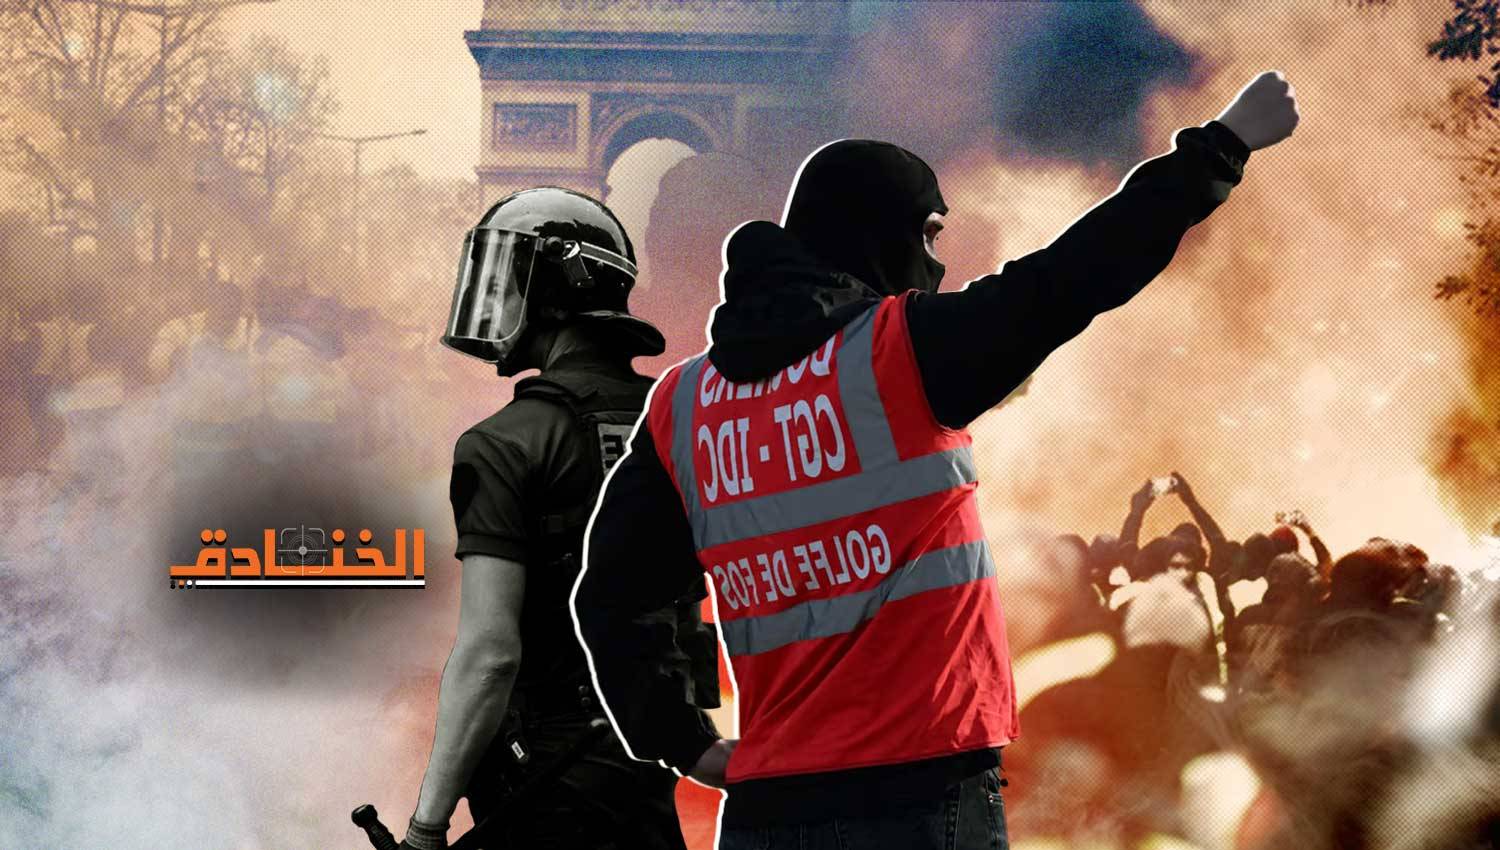 فرنسا: 3300 معتقل ومليون يورو للضابط القاتل! 